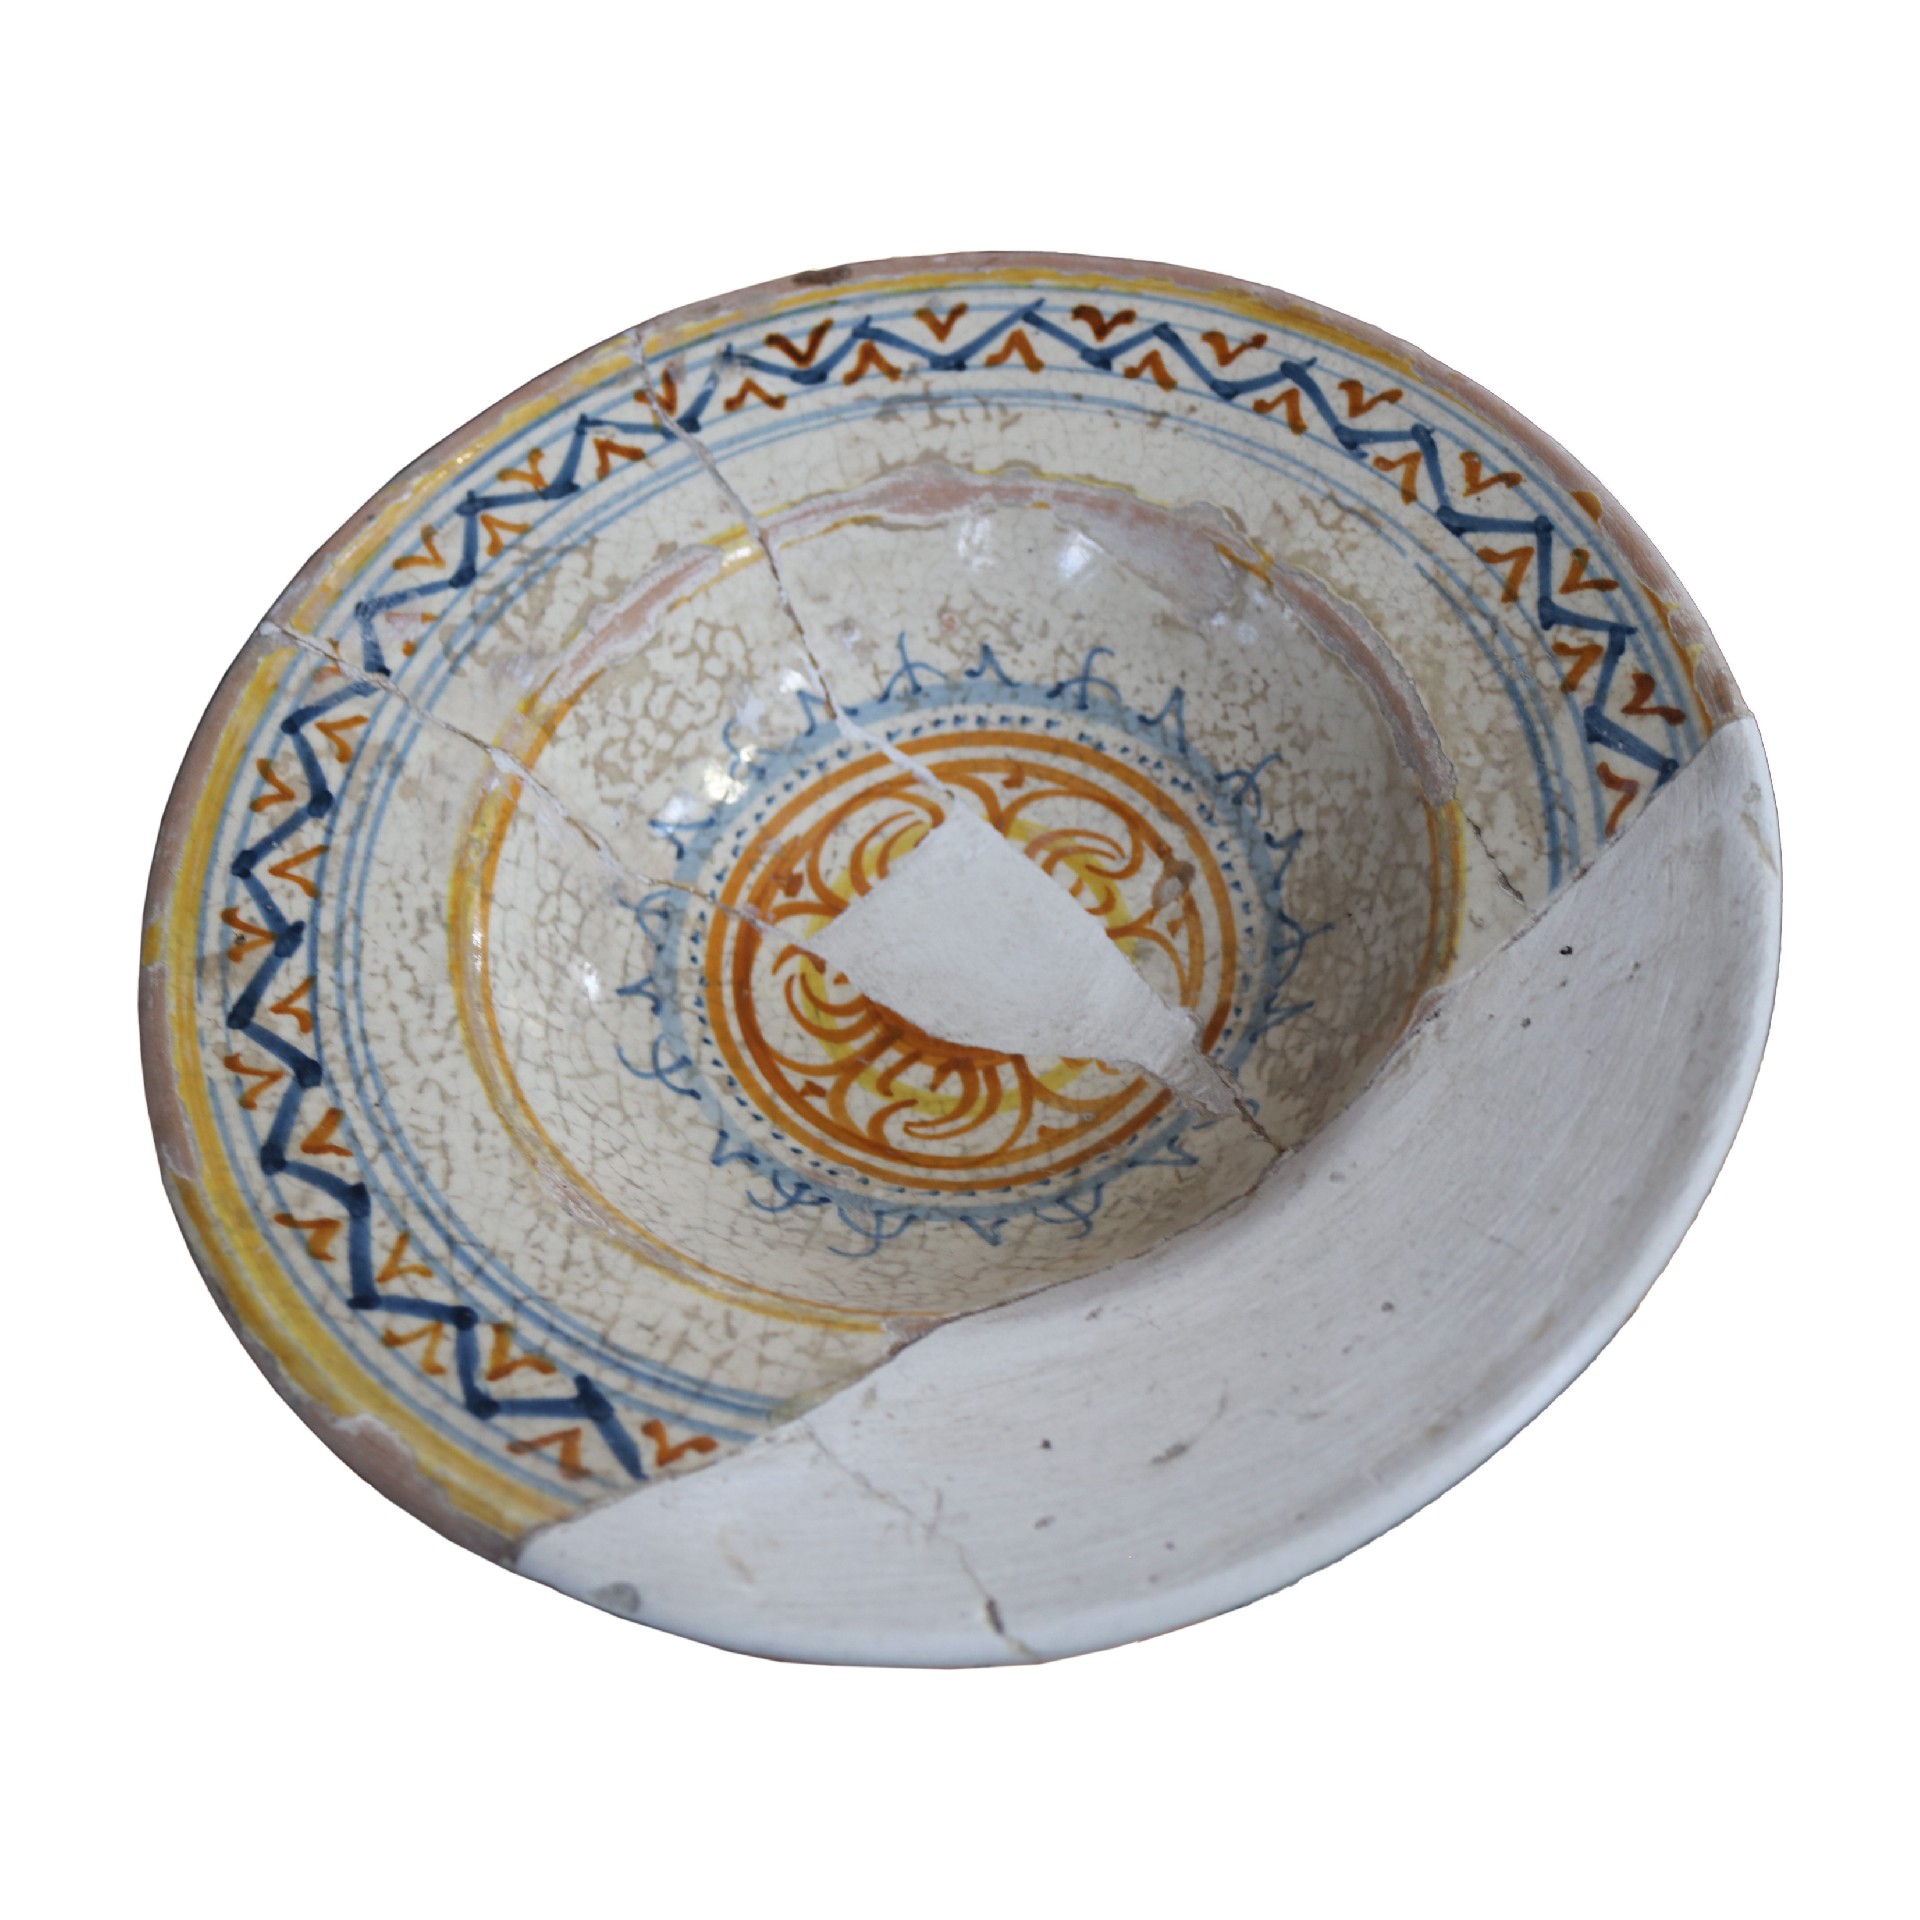 Antico piatto in maiolica. Epoca XVI secolo. - Ceramiche - Oggettistica - Prodotti - Antichità Fiorillo